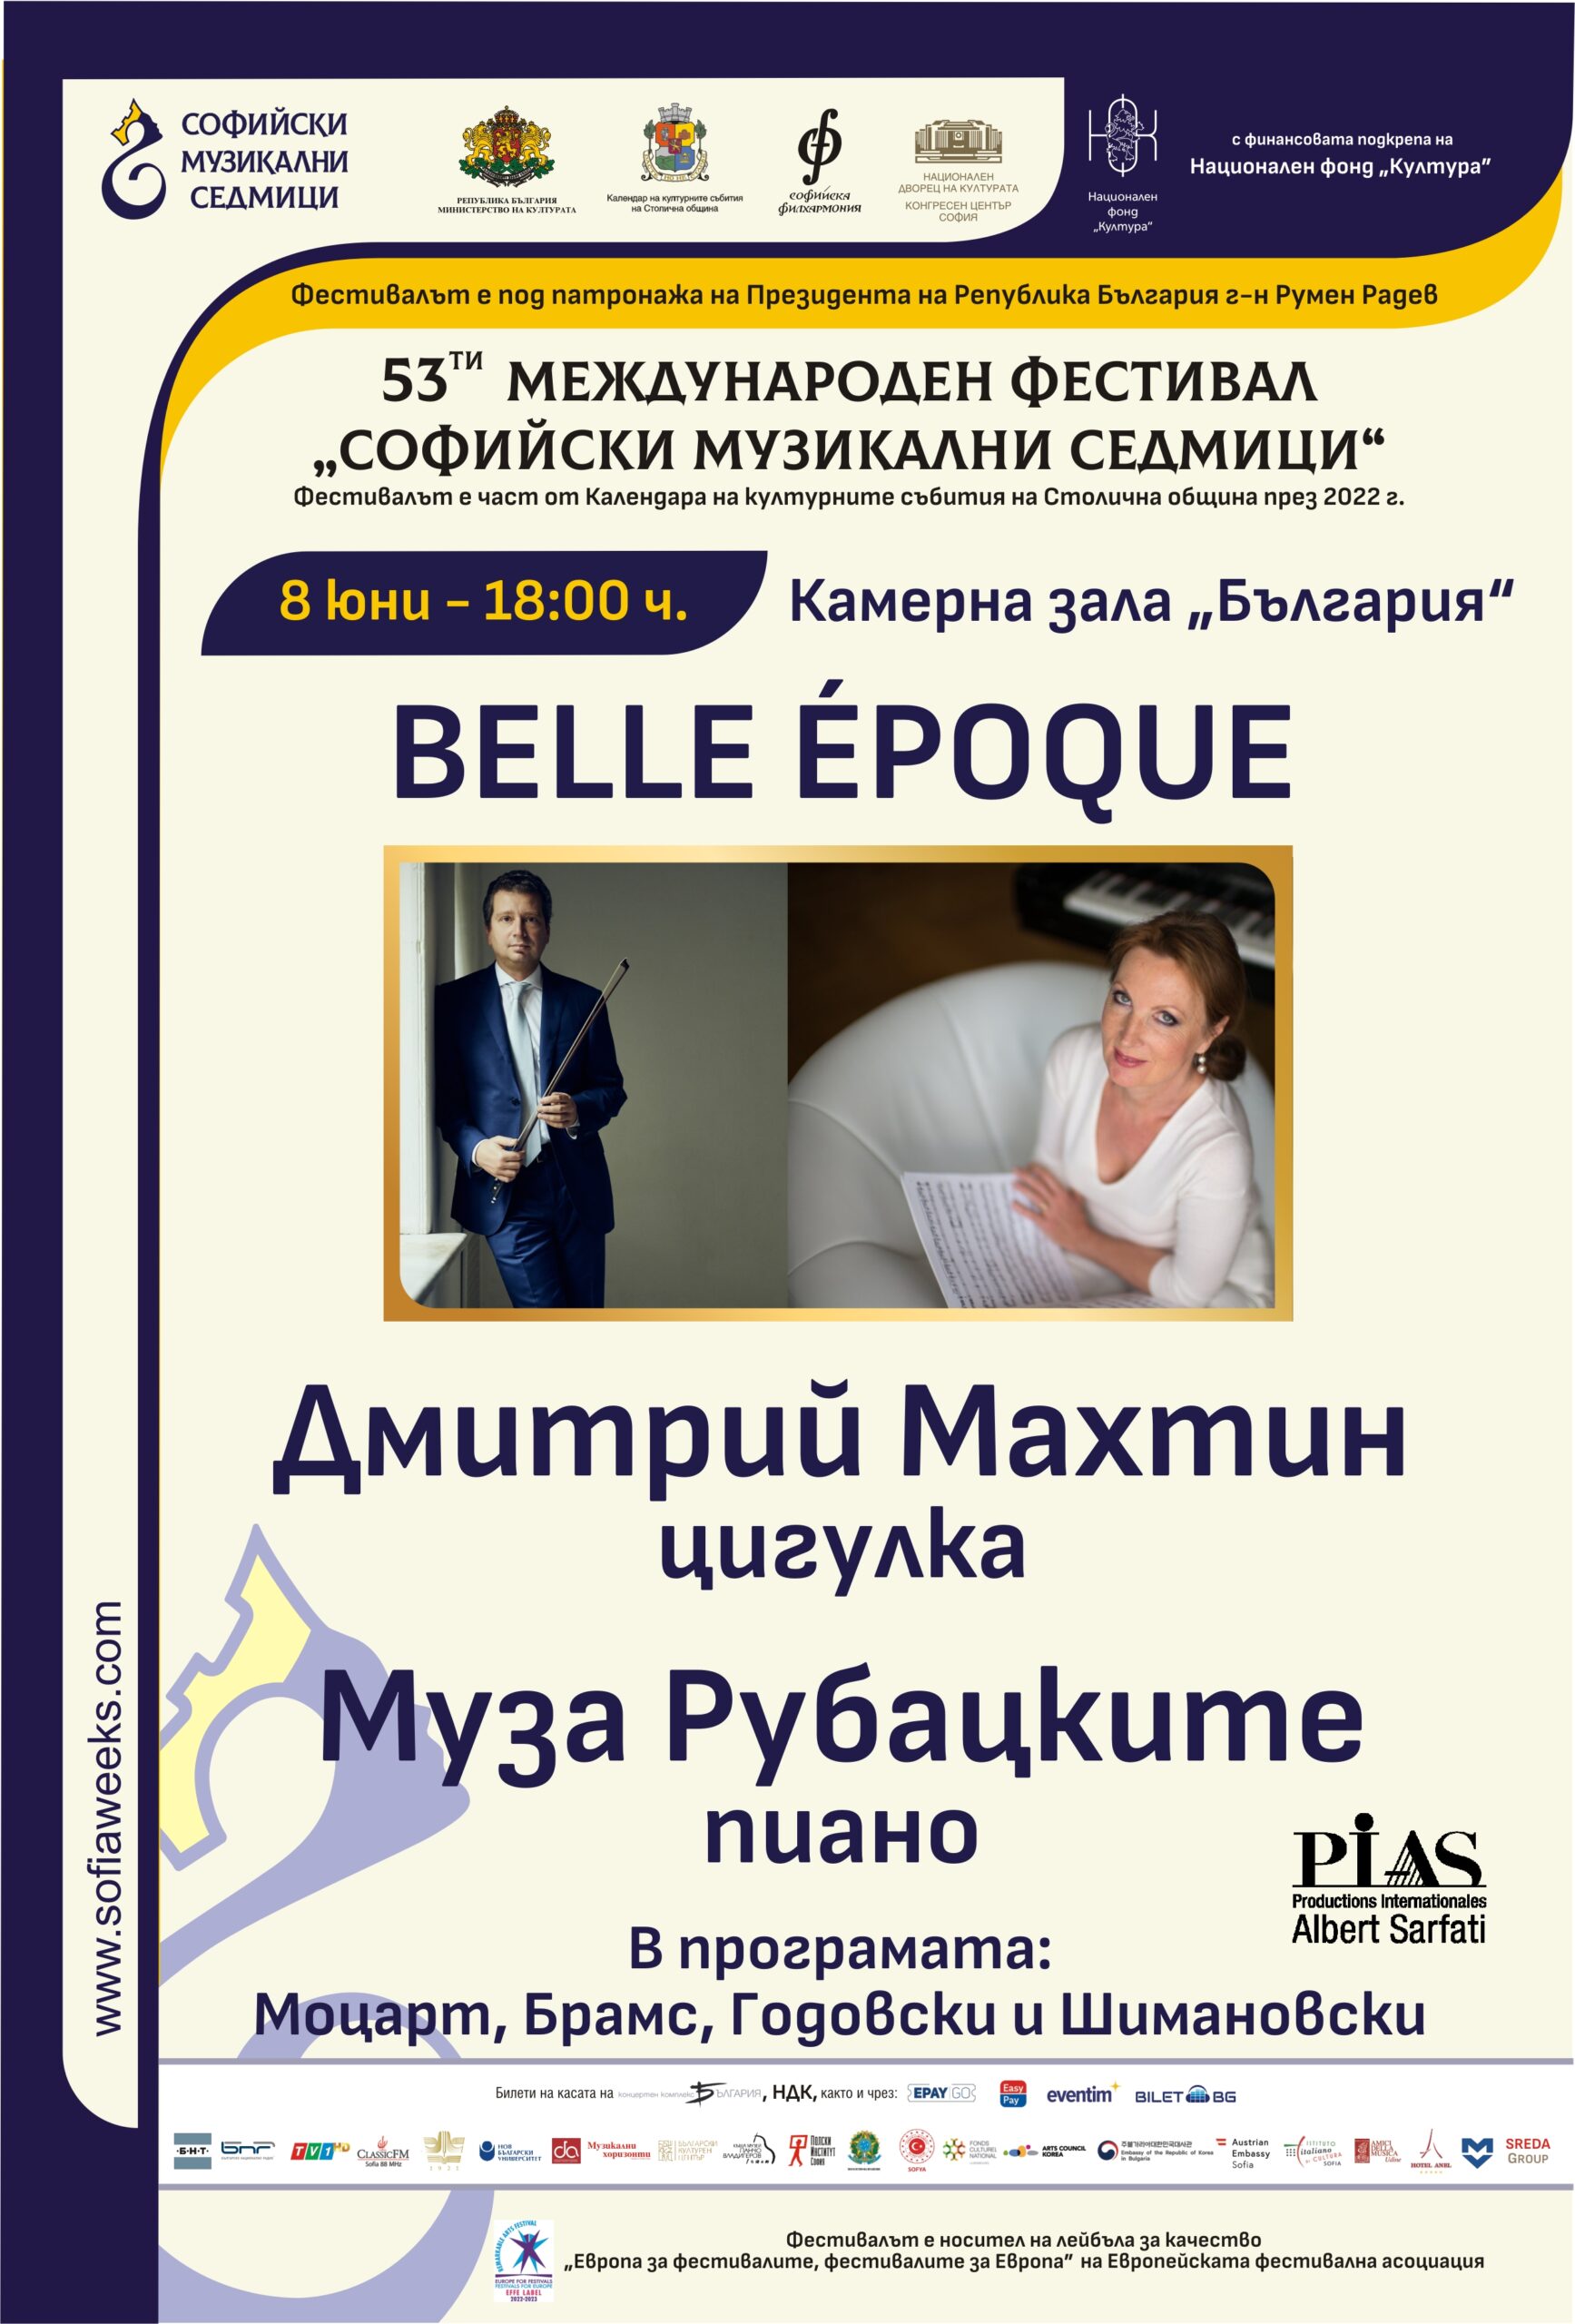 „Belle époque“: Ефирен концерт за цигулка и пиано на Махтин и Рубацките